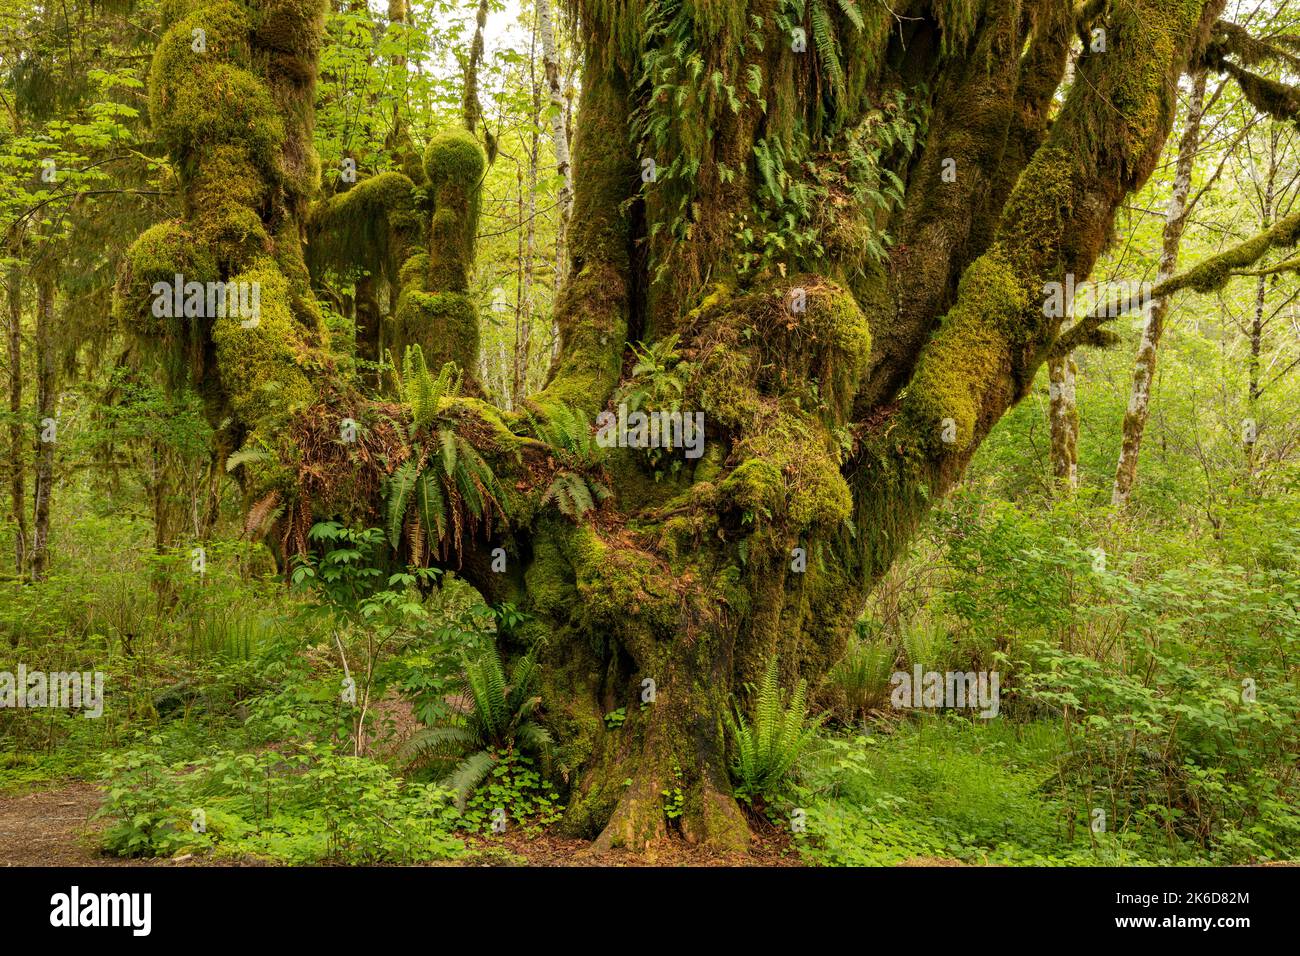 WA22240-00...WASHINGTON - albero dell'acero delle foglie grandi che serve come giardino per i vari tipi di muschio e felci nella foresta pluviale di Quinault di nazionale olimpica Foto Stock